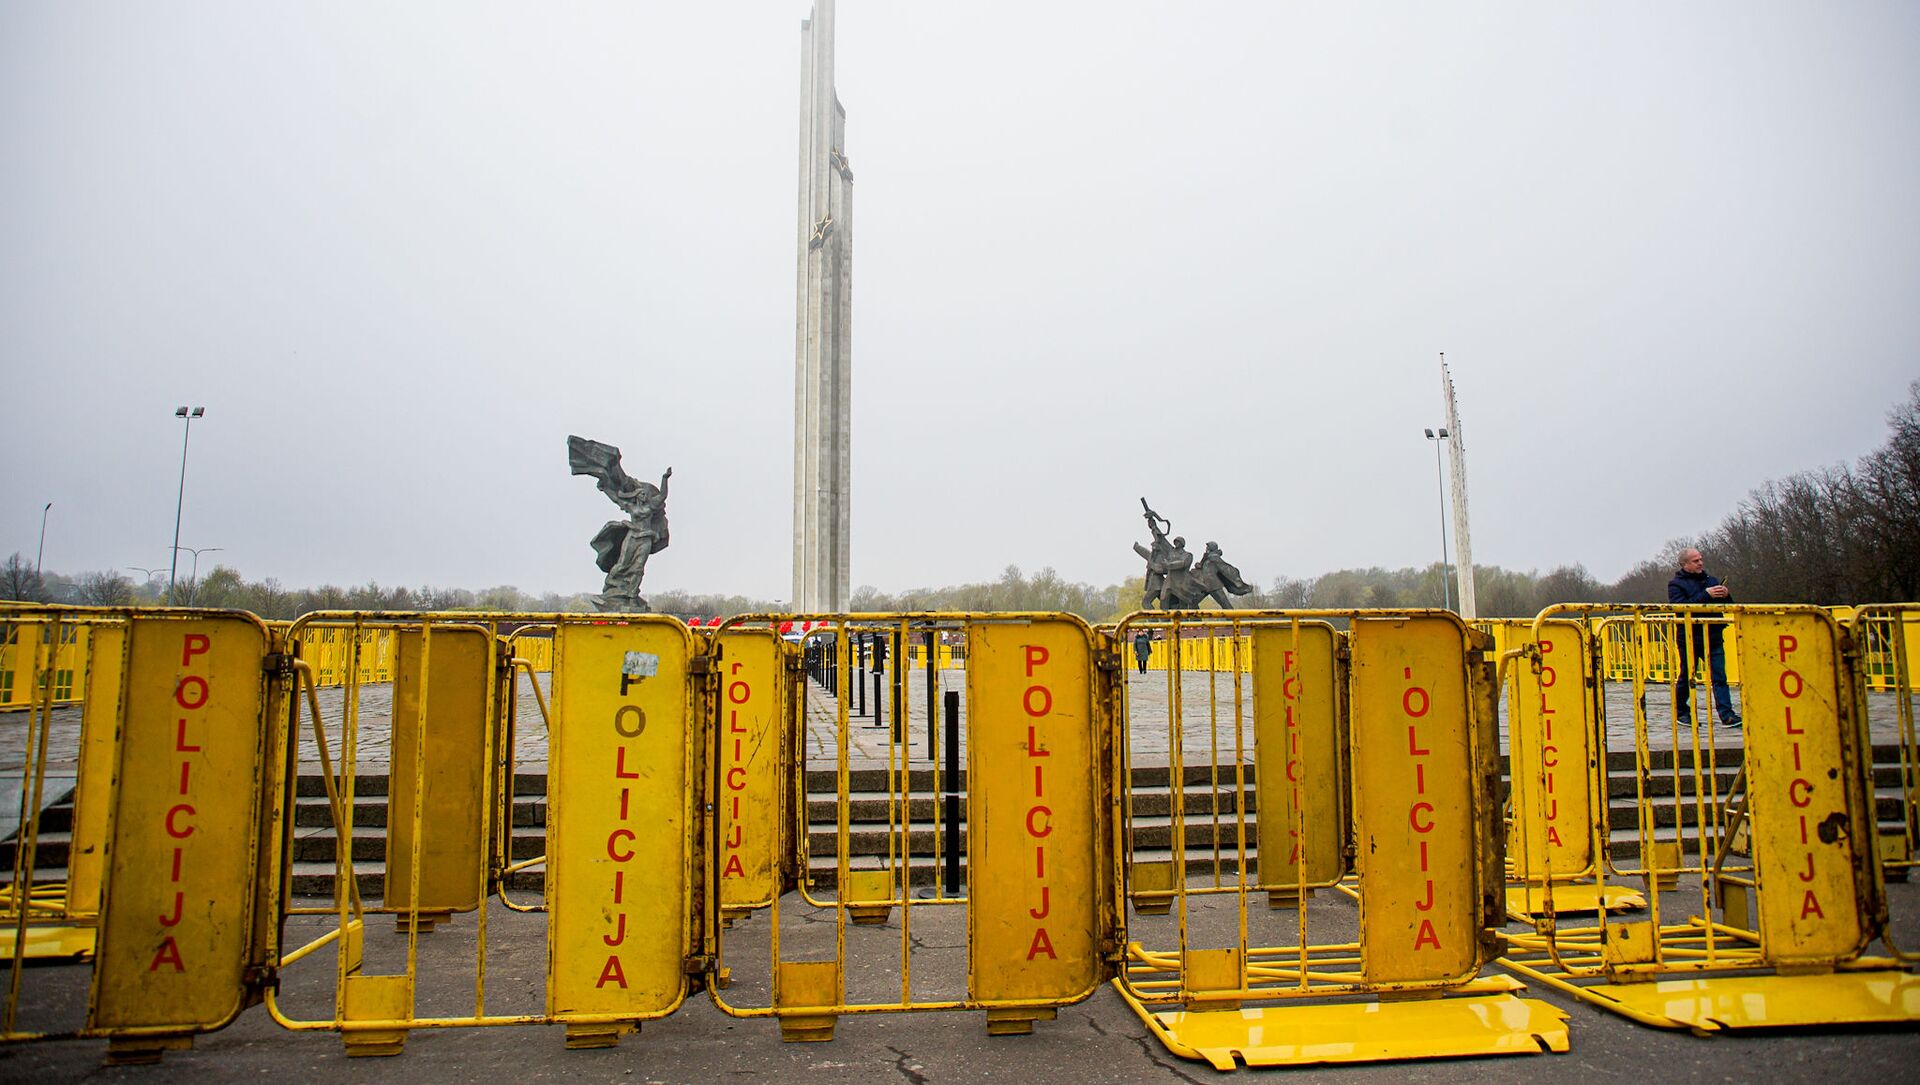 Полицейские закрыли доступ к памятнику Освободителям Риги - Sputnik Латвия, 1920, 09.05.2021